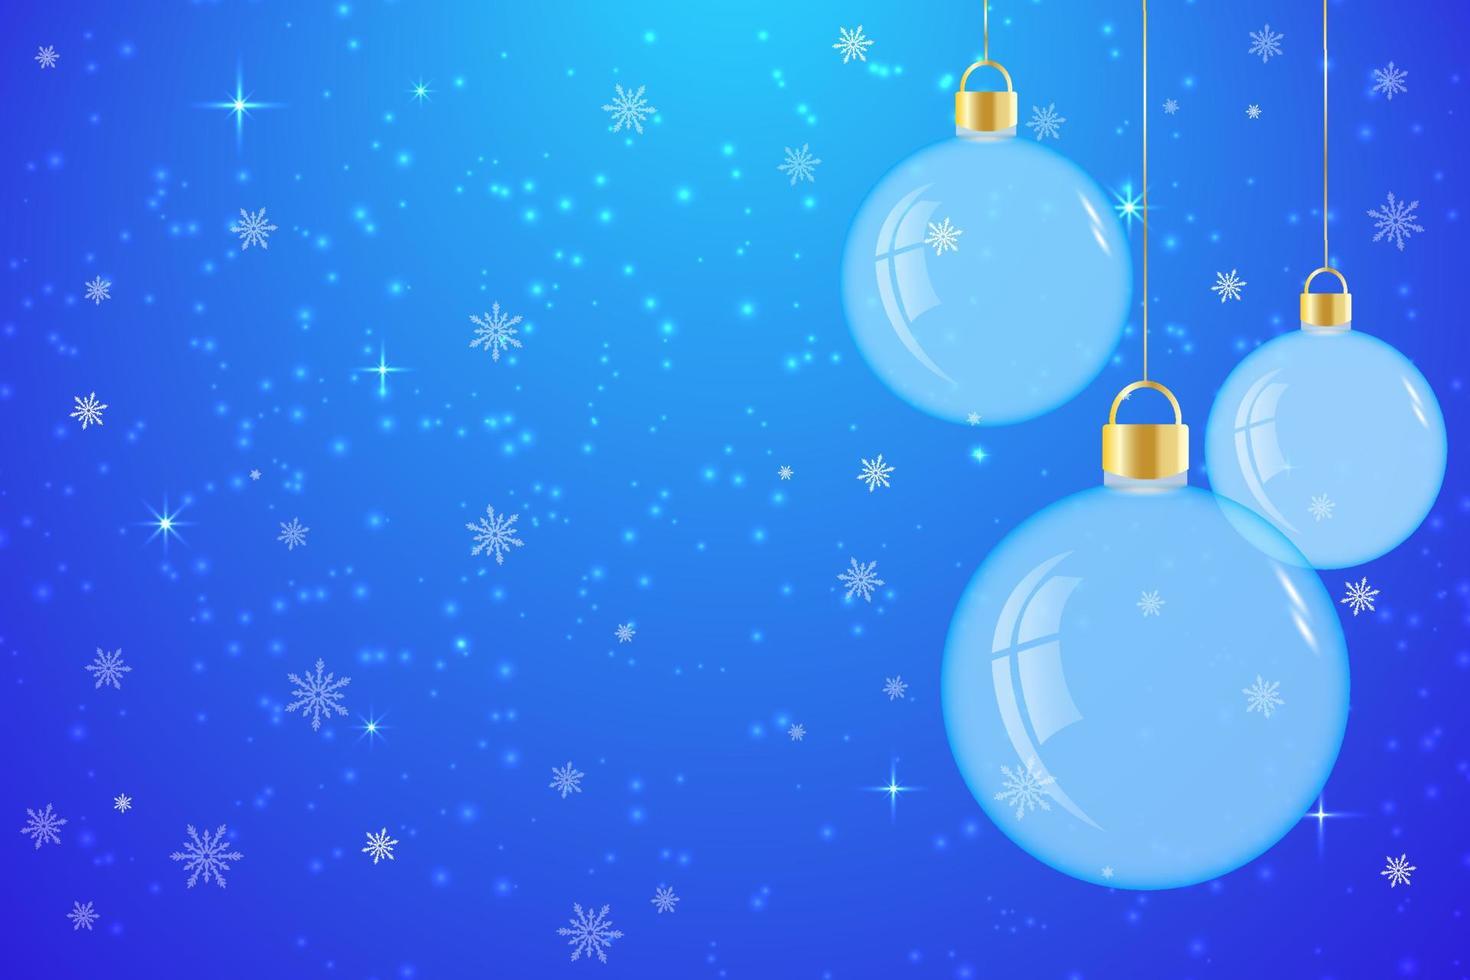 juguetes de árbol de navidad de vidrio con estrellas y copos de nieve sobre fondo azul. ilustración vectorial realista de la pelota. tarjeta de año nuevo. vector